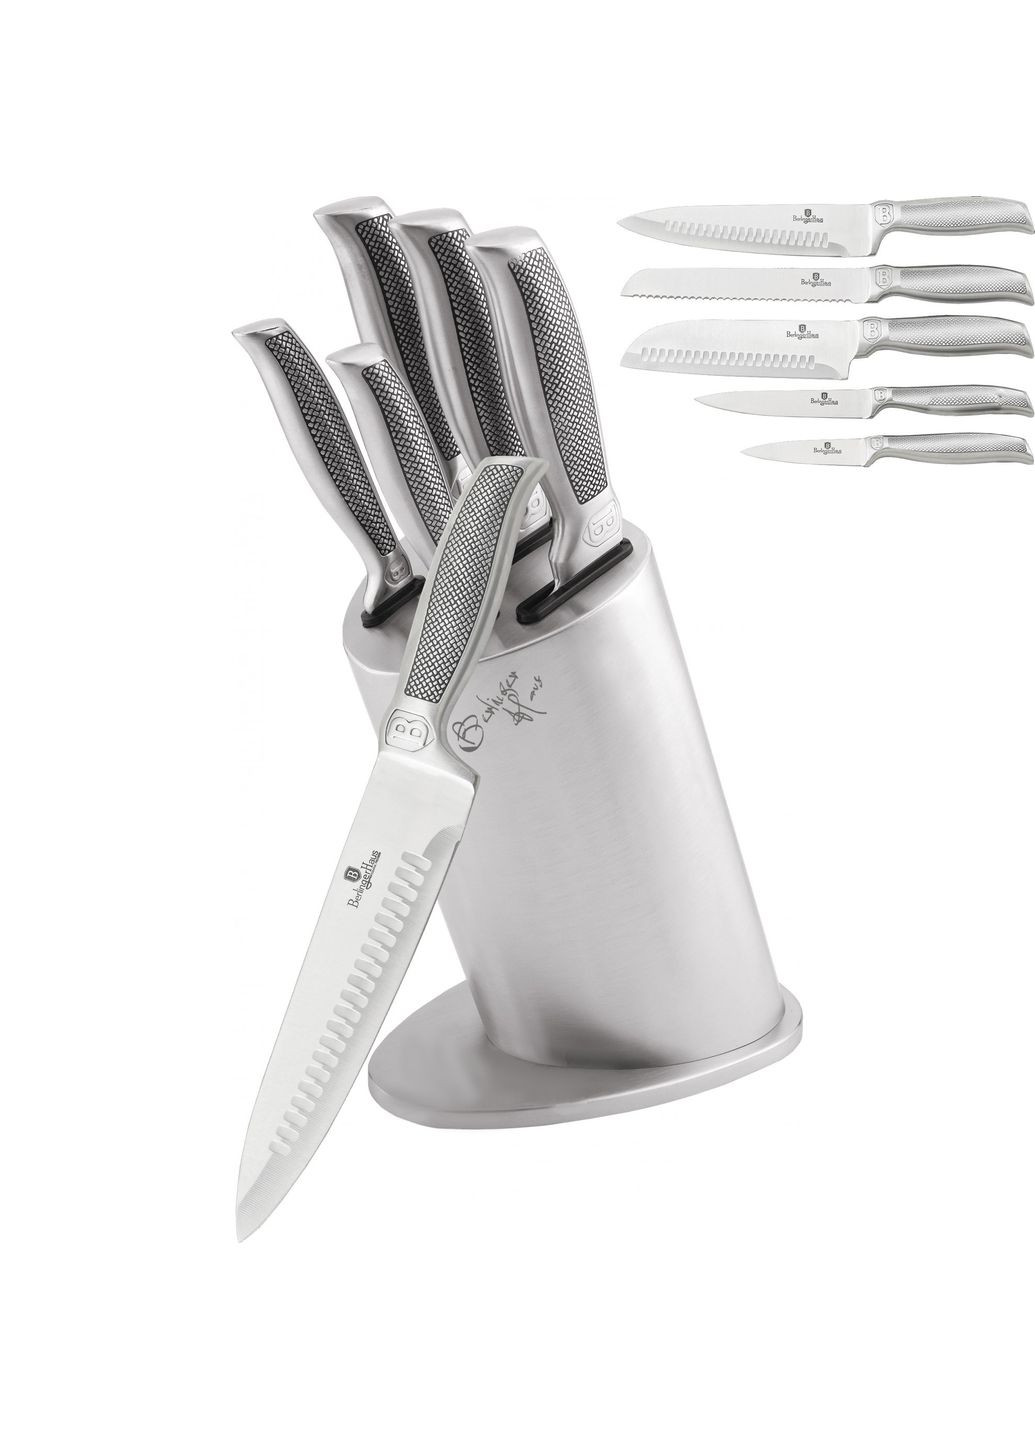 Набор ножей Kikoza Collection Silver из 6 предметов BH2254 Berlinger Haus комбинированные,